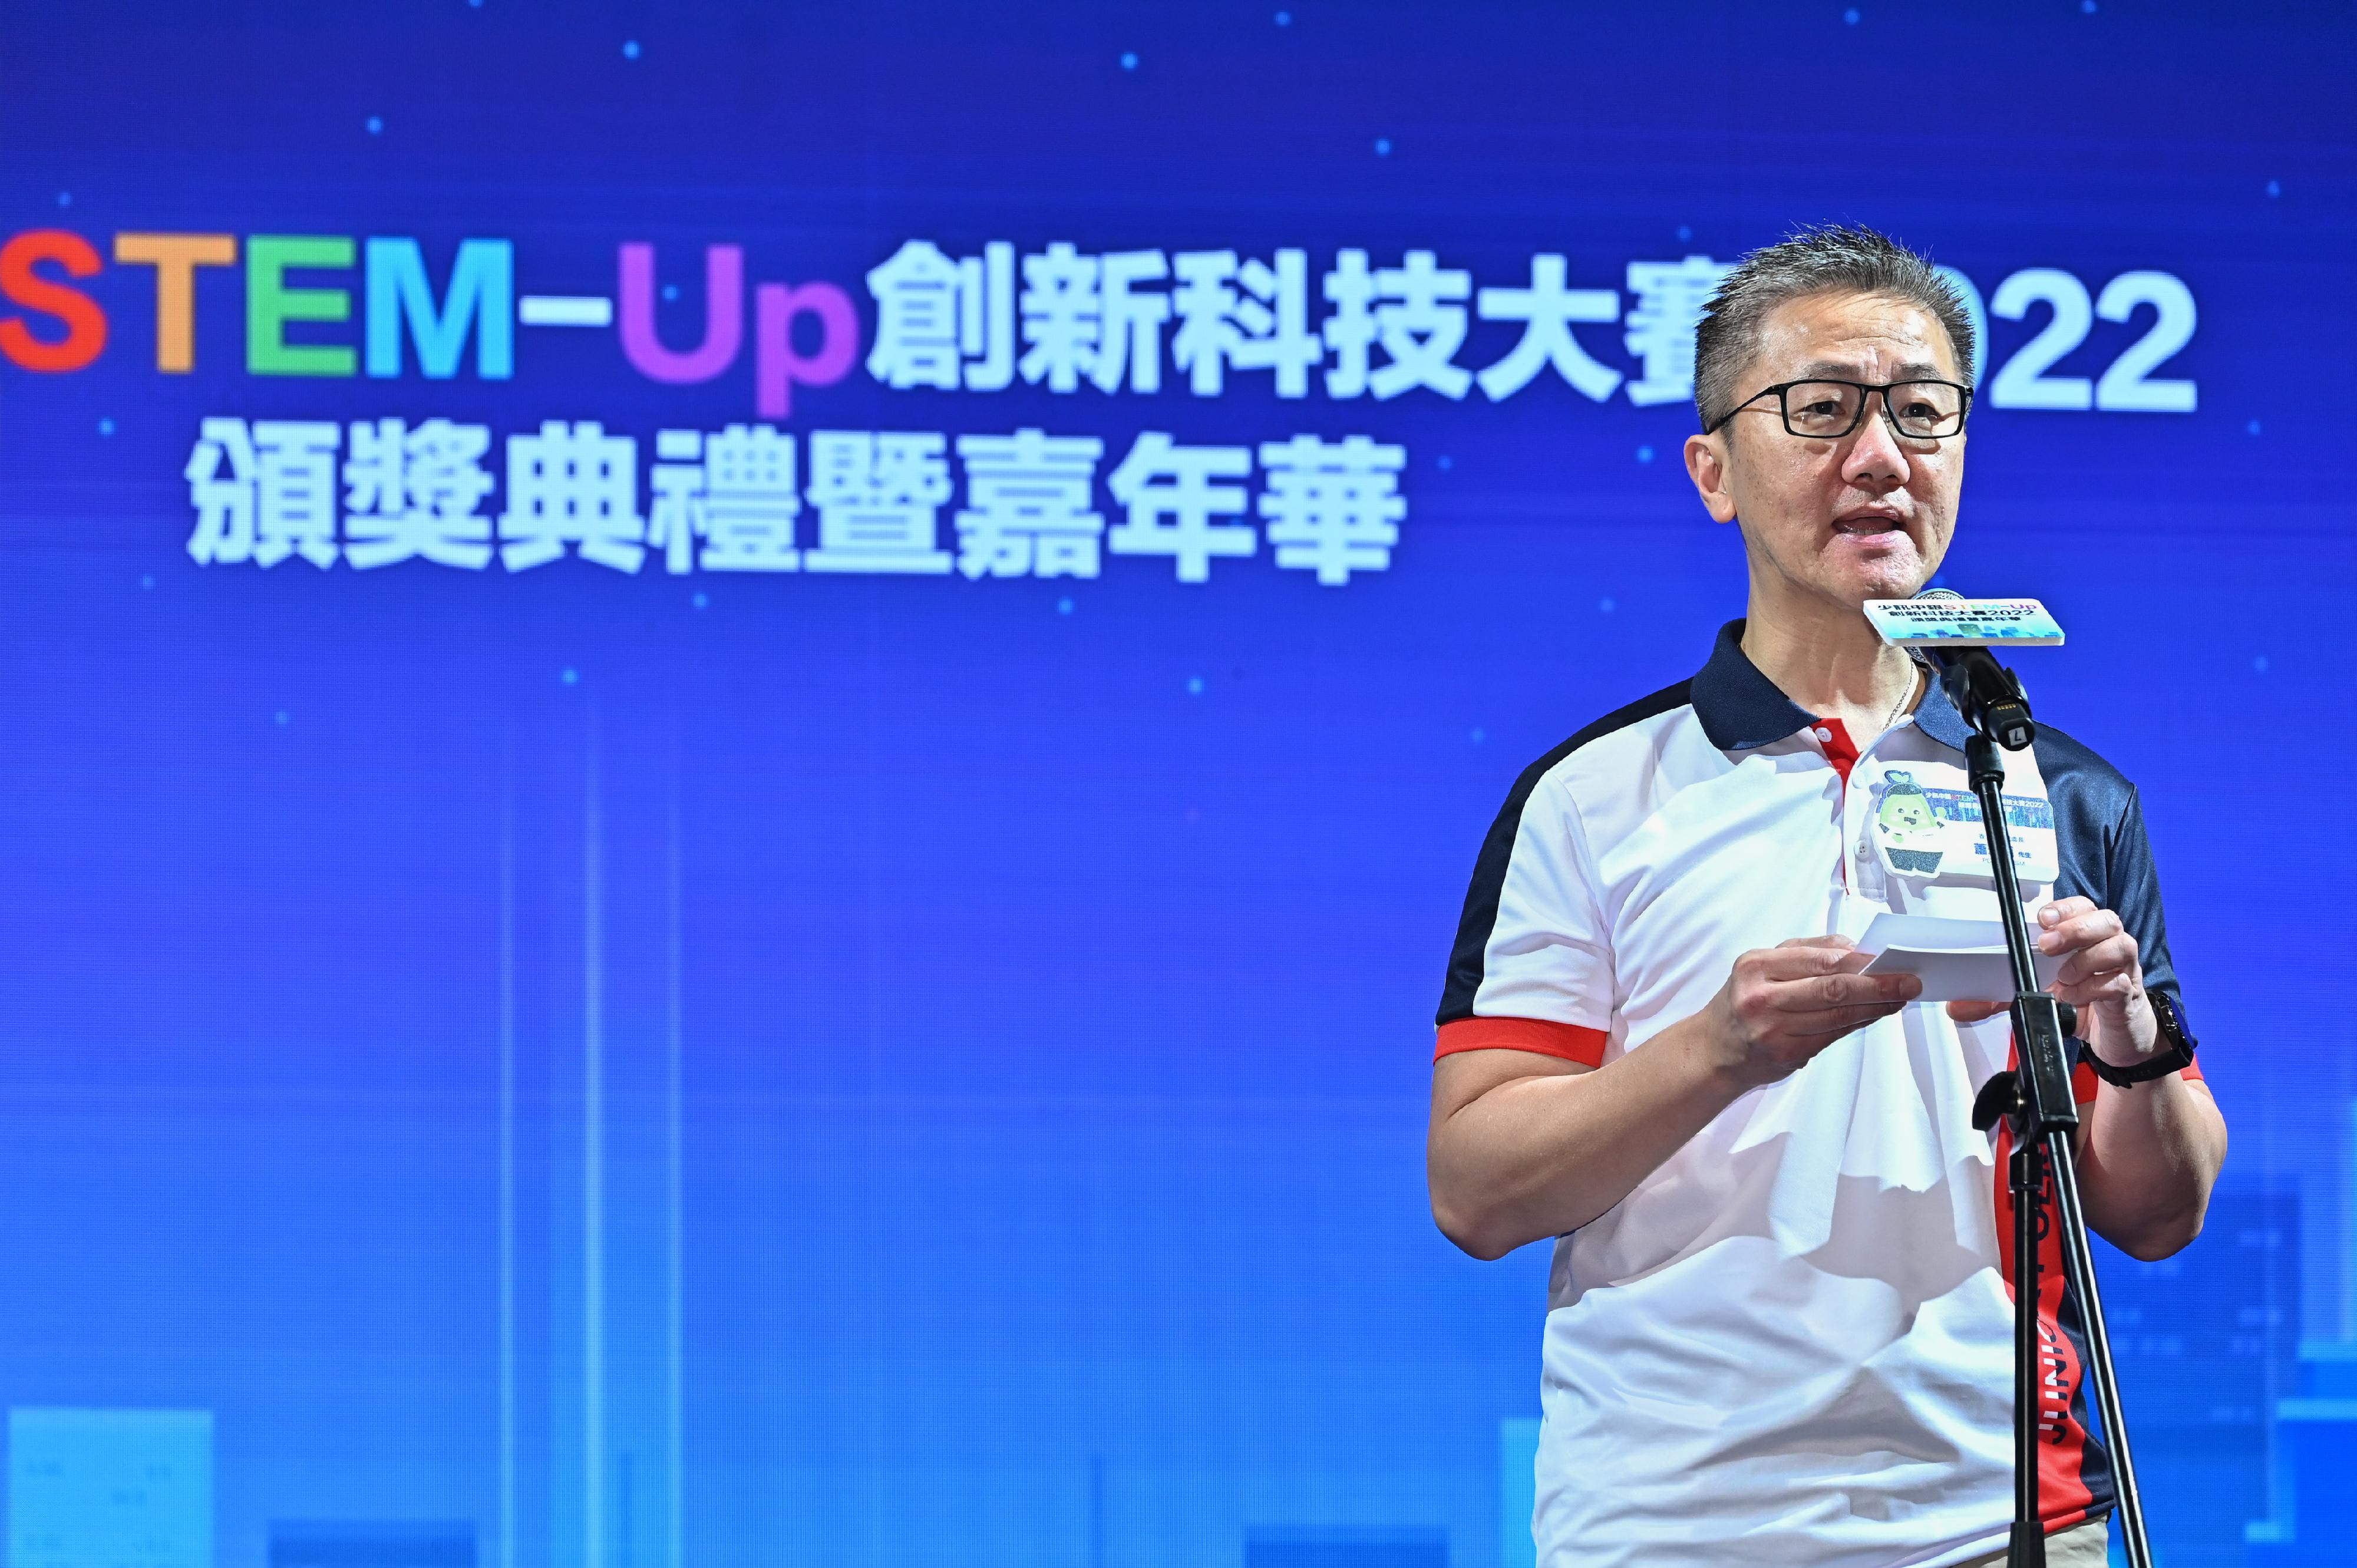 少年警讯主办的「少讯中银STEM-Up创新科技大赛 2022」今日（四月一日）在香港会议展览中心举行颁奖典礼。图示警务处处长萧泽颐在仪式上致辞。